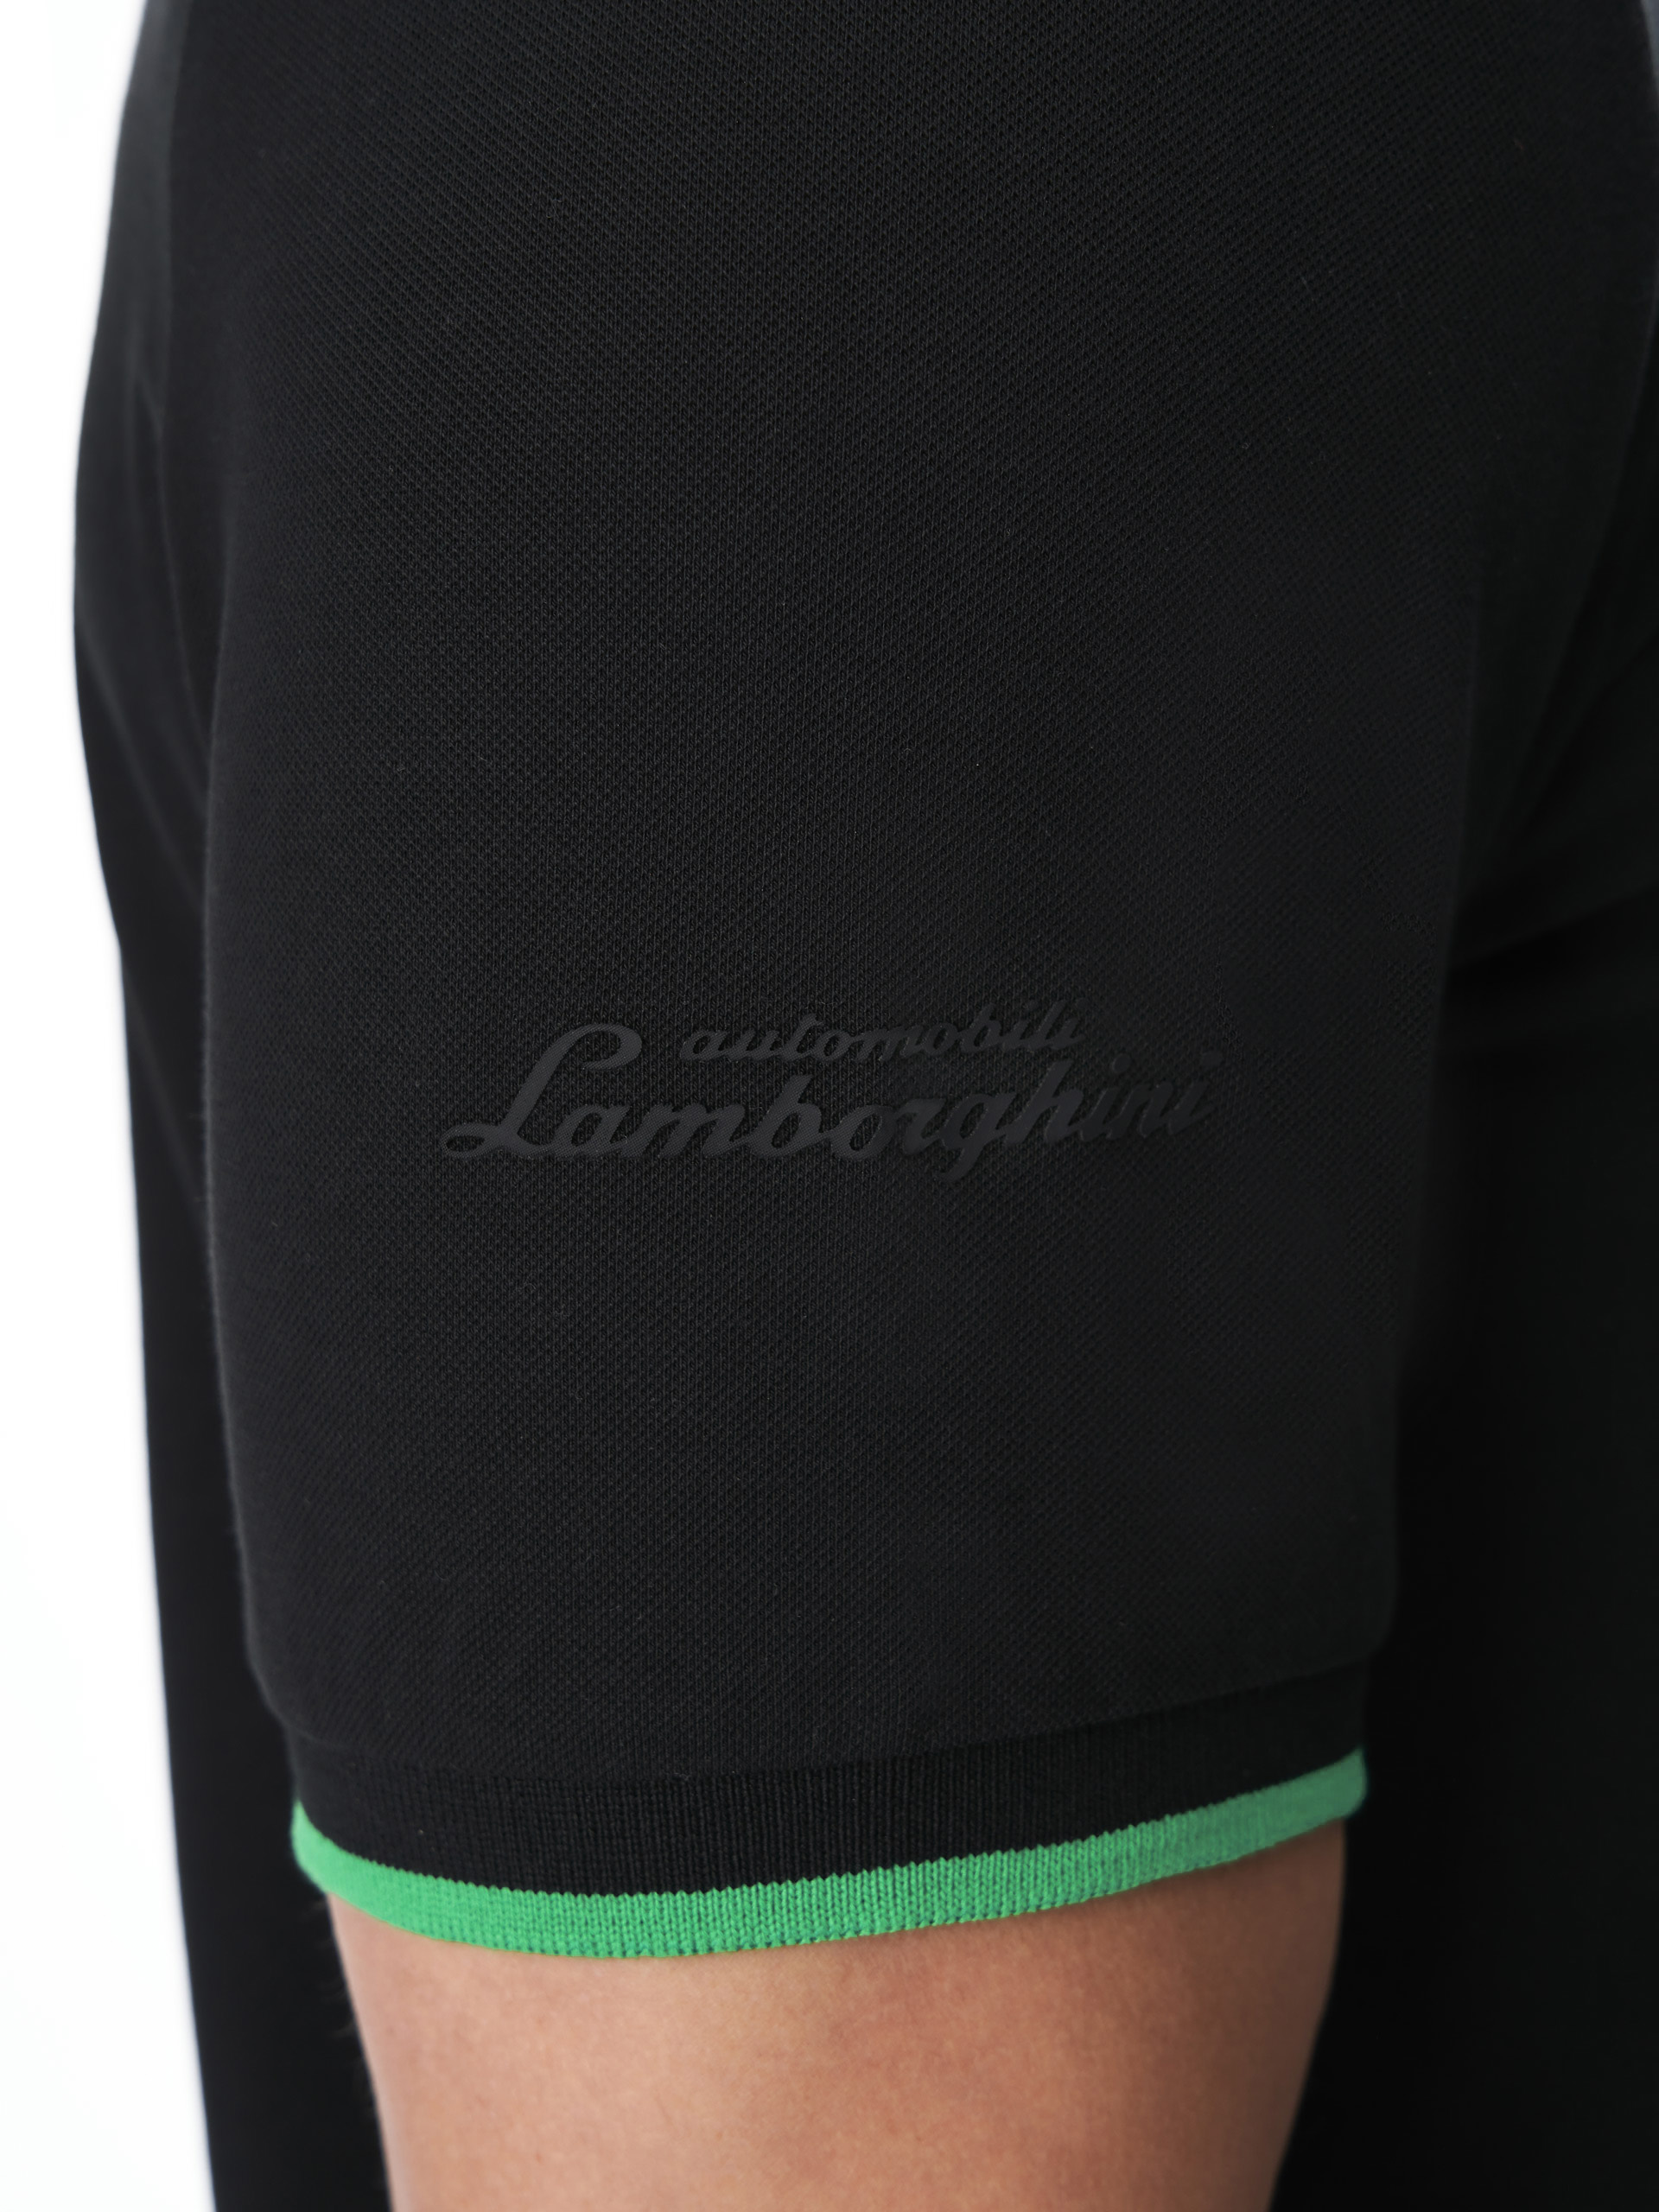 AUTOMOBILI LAMBORGHINI REPLICA SQUADRA CORSE POLO SHIRT FOR MEN |  Lamborghini Store